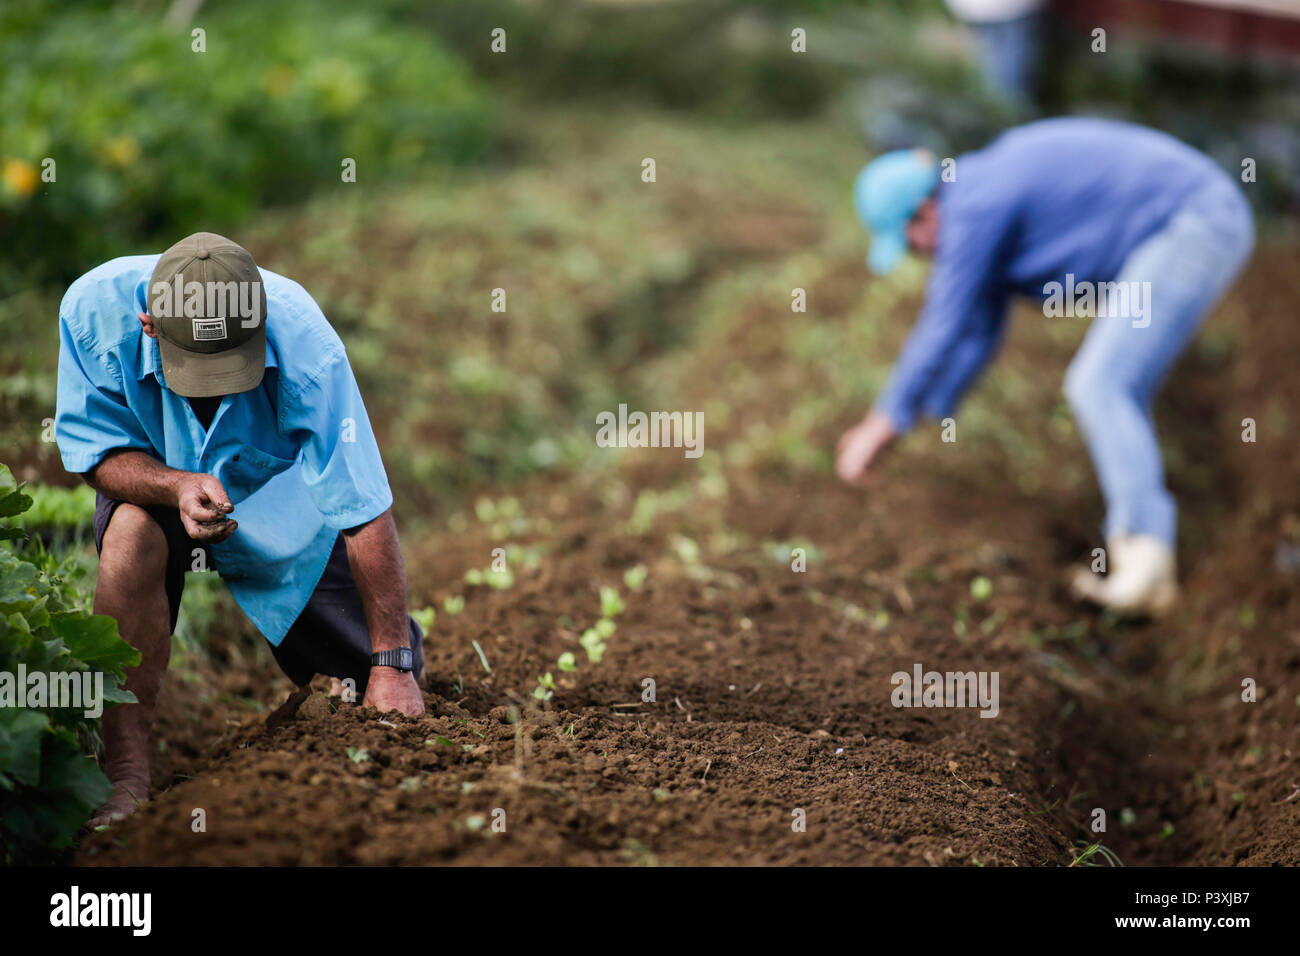 Fazem agricultores o plantio de hortaliçças em uma zona rural da Cidade de Santa María de Jetibá, no interior do Espírito Santo. Foto de stock